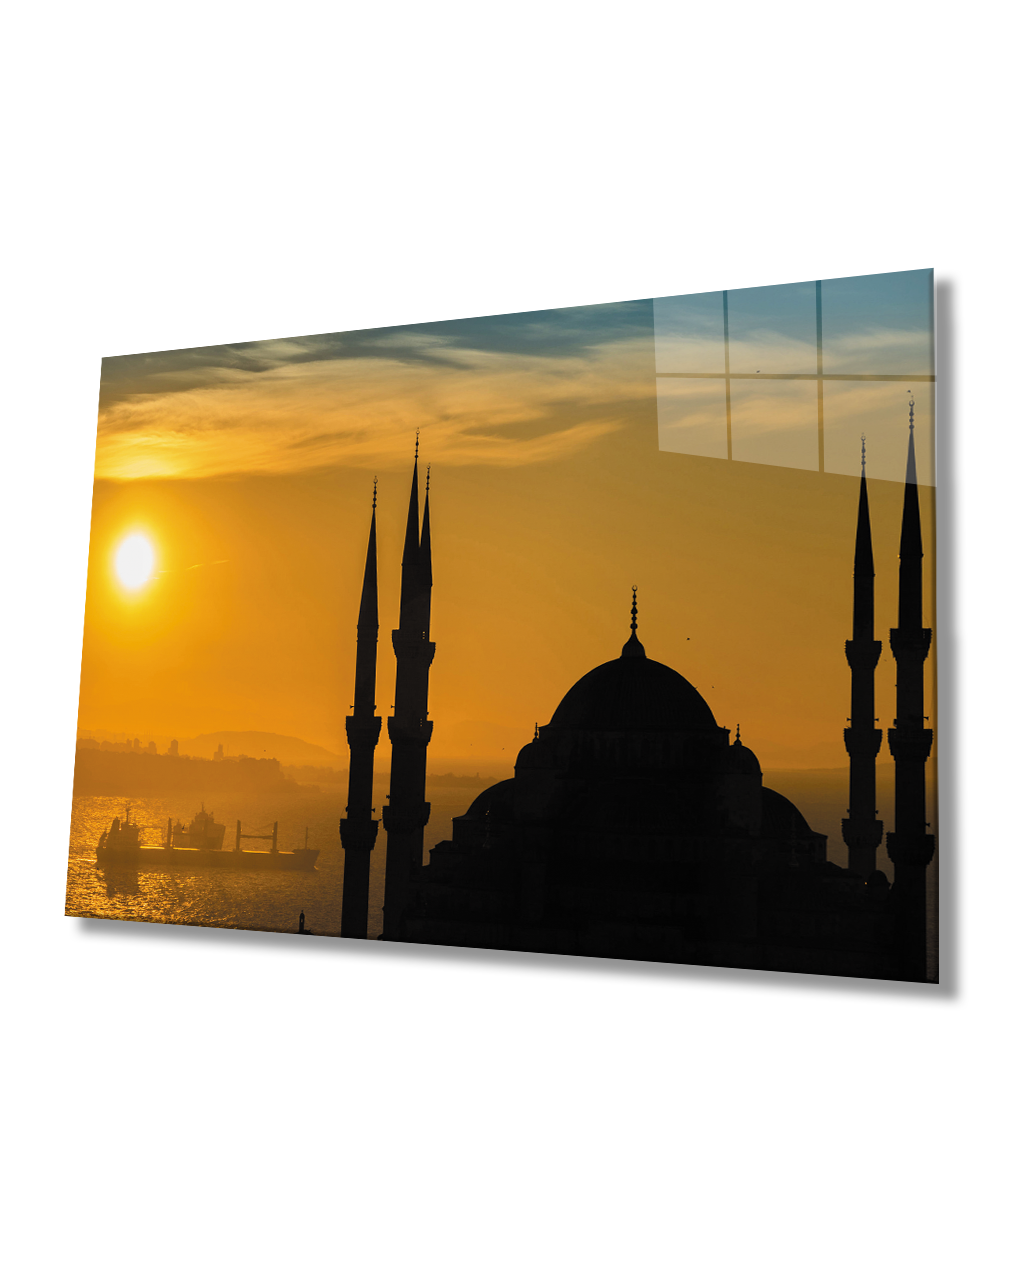 Gün Batımı Cami Deniz Cam Tablo  4mm Dayanıklı Temperli Cam Sunset Mosque Sea Glass Table 4mm Durable Tempered Glass